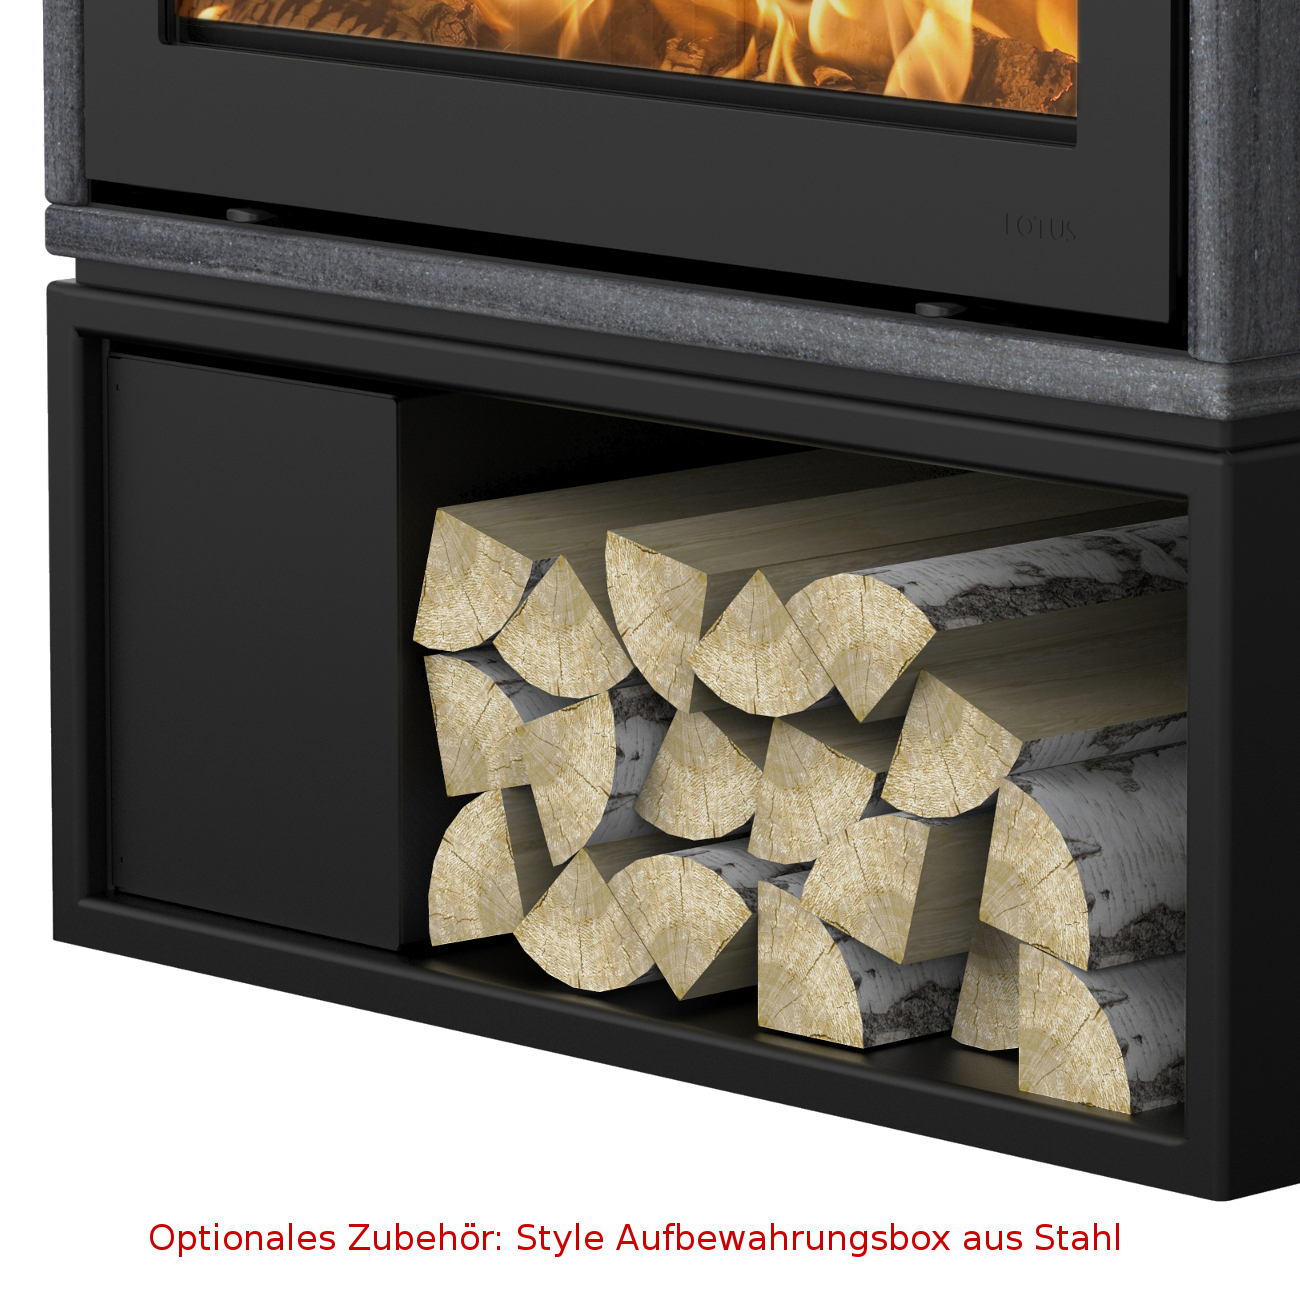 Gas Fireplace Sand Fresh Style 470w Speckstein Stein 7kw Kaminofen